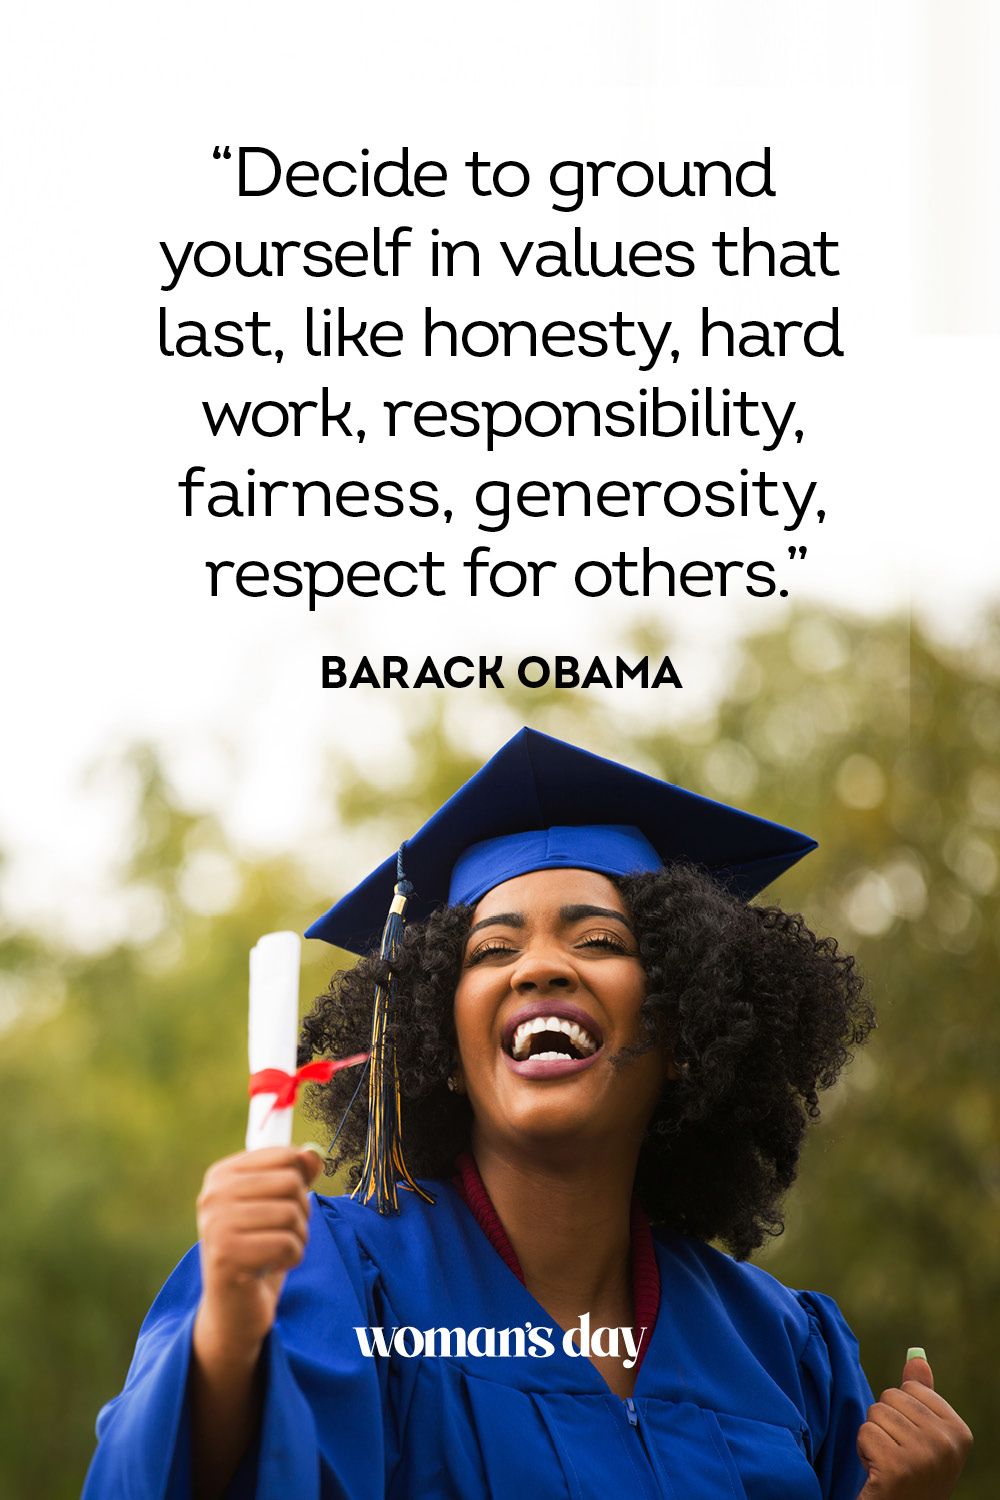 barack obama education quotes